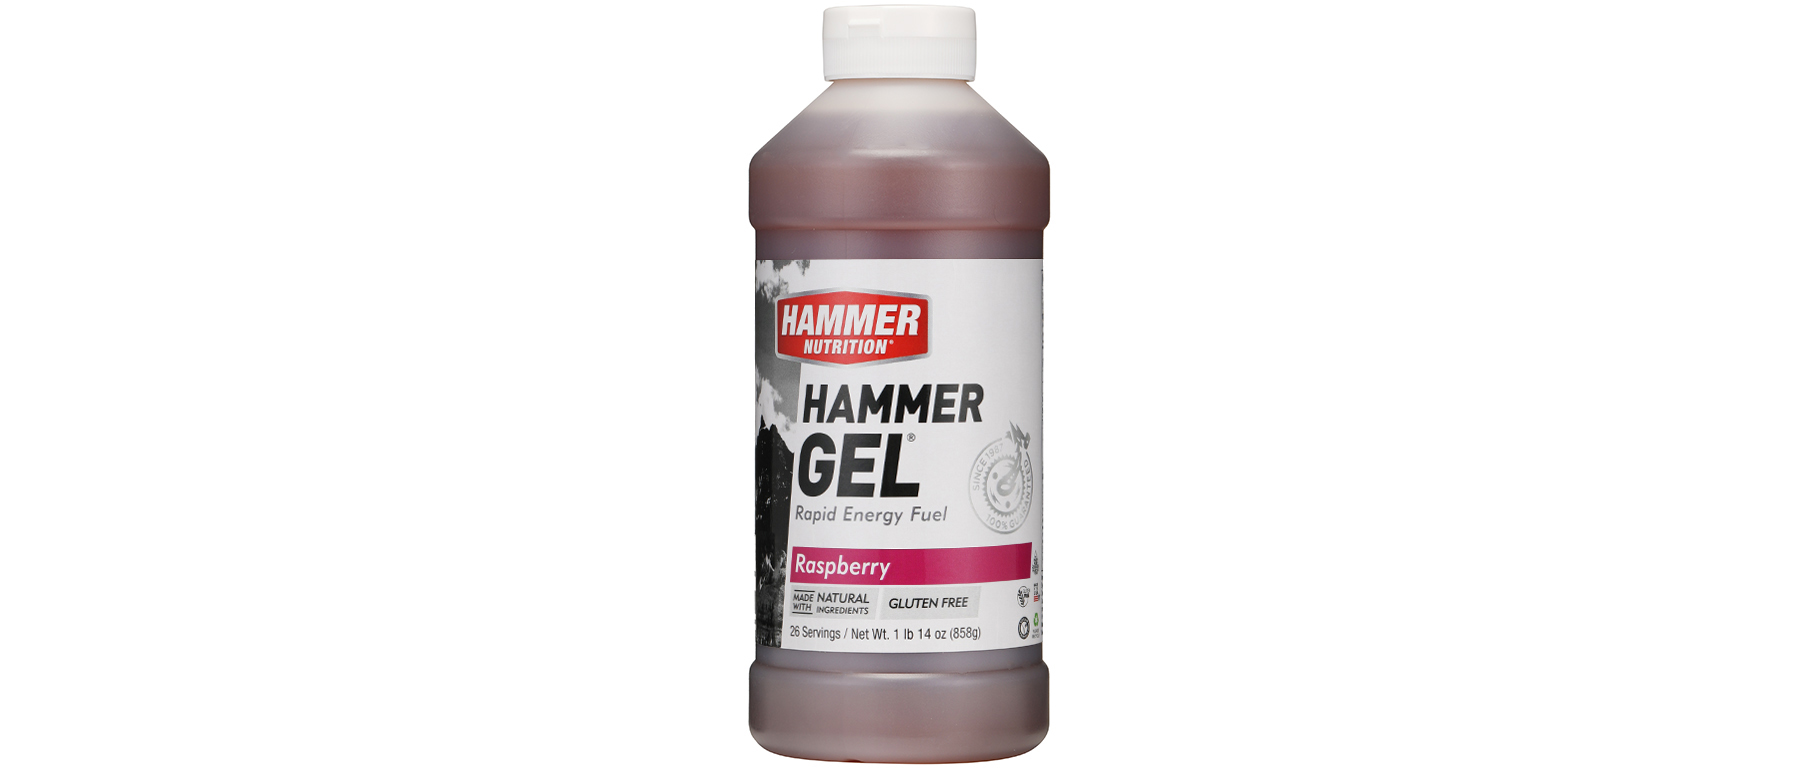 Hammer Gel 26 Serving Refill Bottle